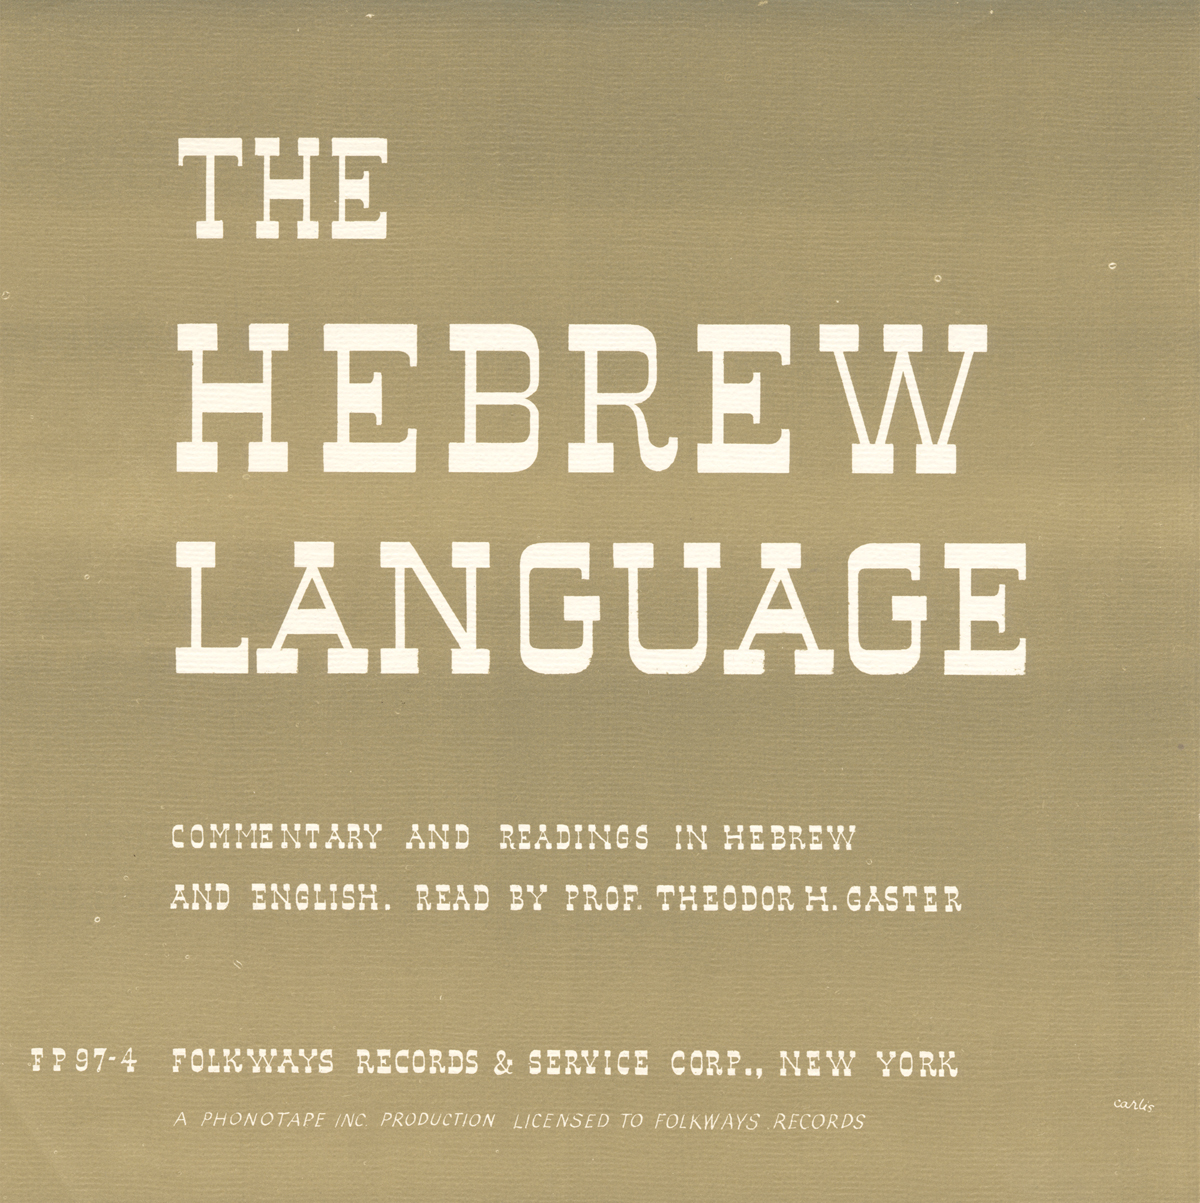 THE HEBREW LANGUAGE